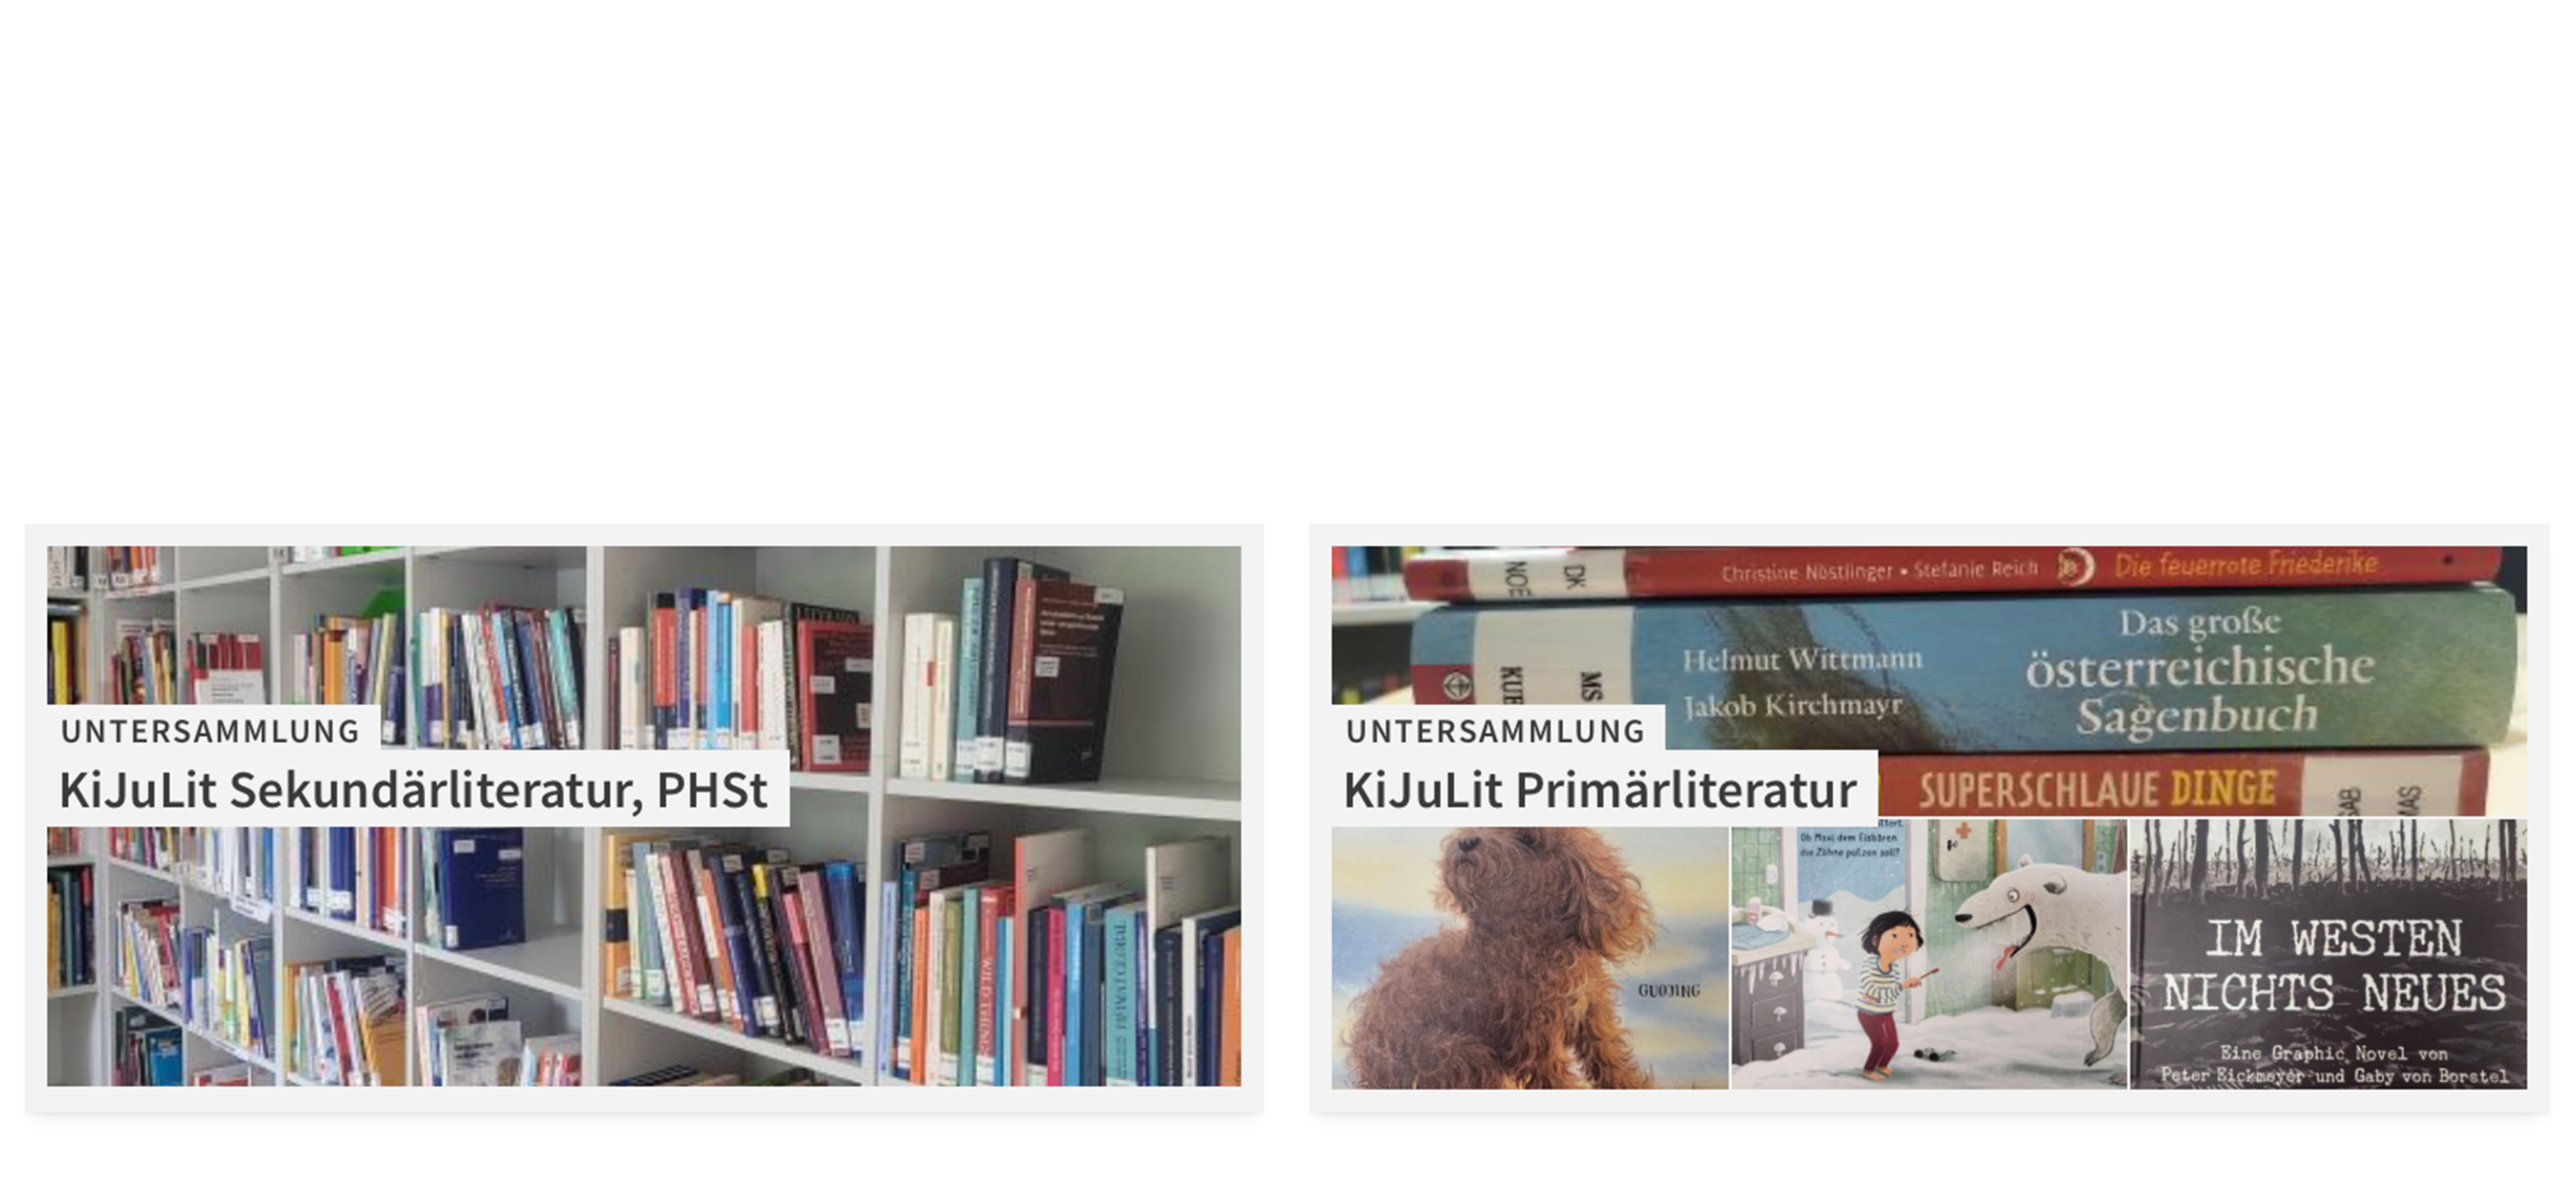 Das KiJuLit-Zentrum bietet Forschenden und Studierenden eine umfangreiche Sammlung an Primär- und Sekundärliteratur. Die Spezialsammlung wird laufend erweitert; Bücher und Medien können über die Bibliothek entliehen werden.